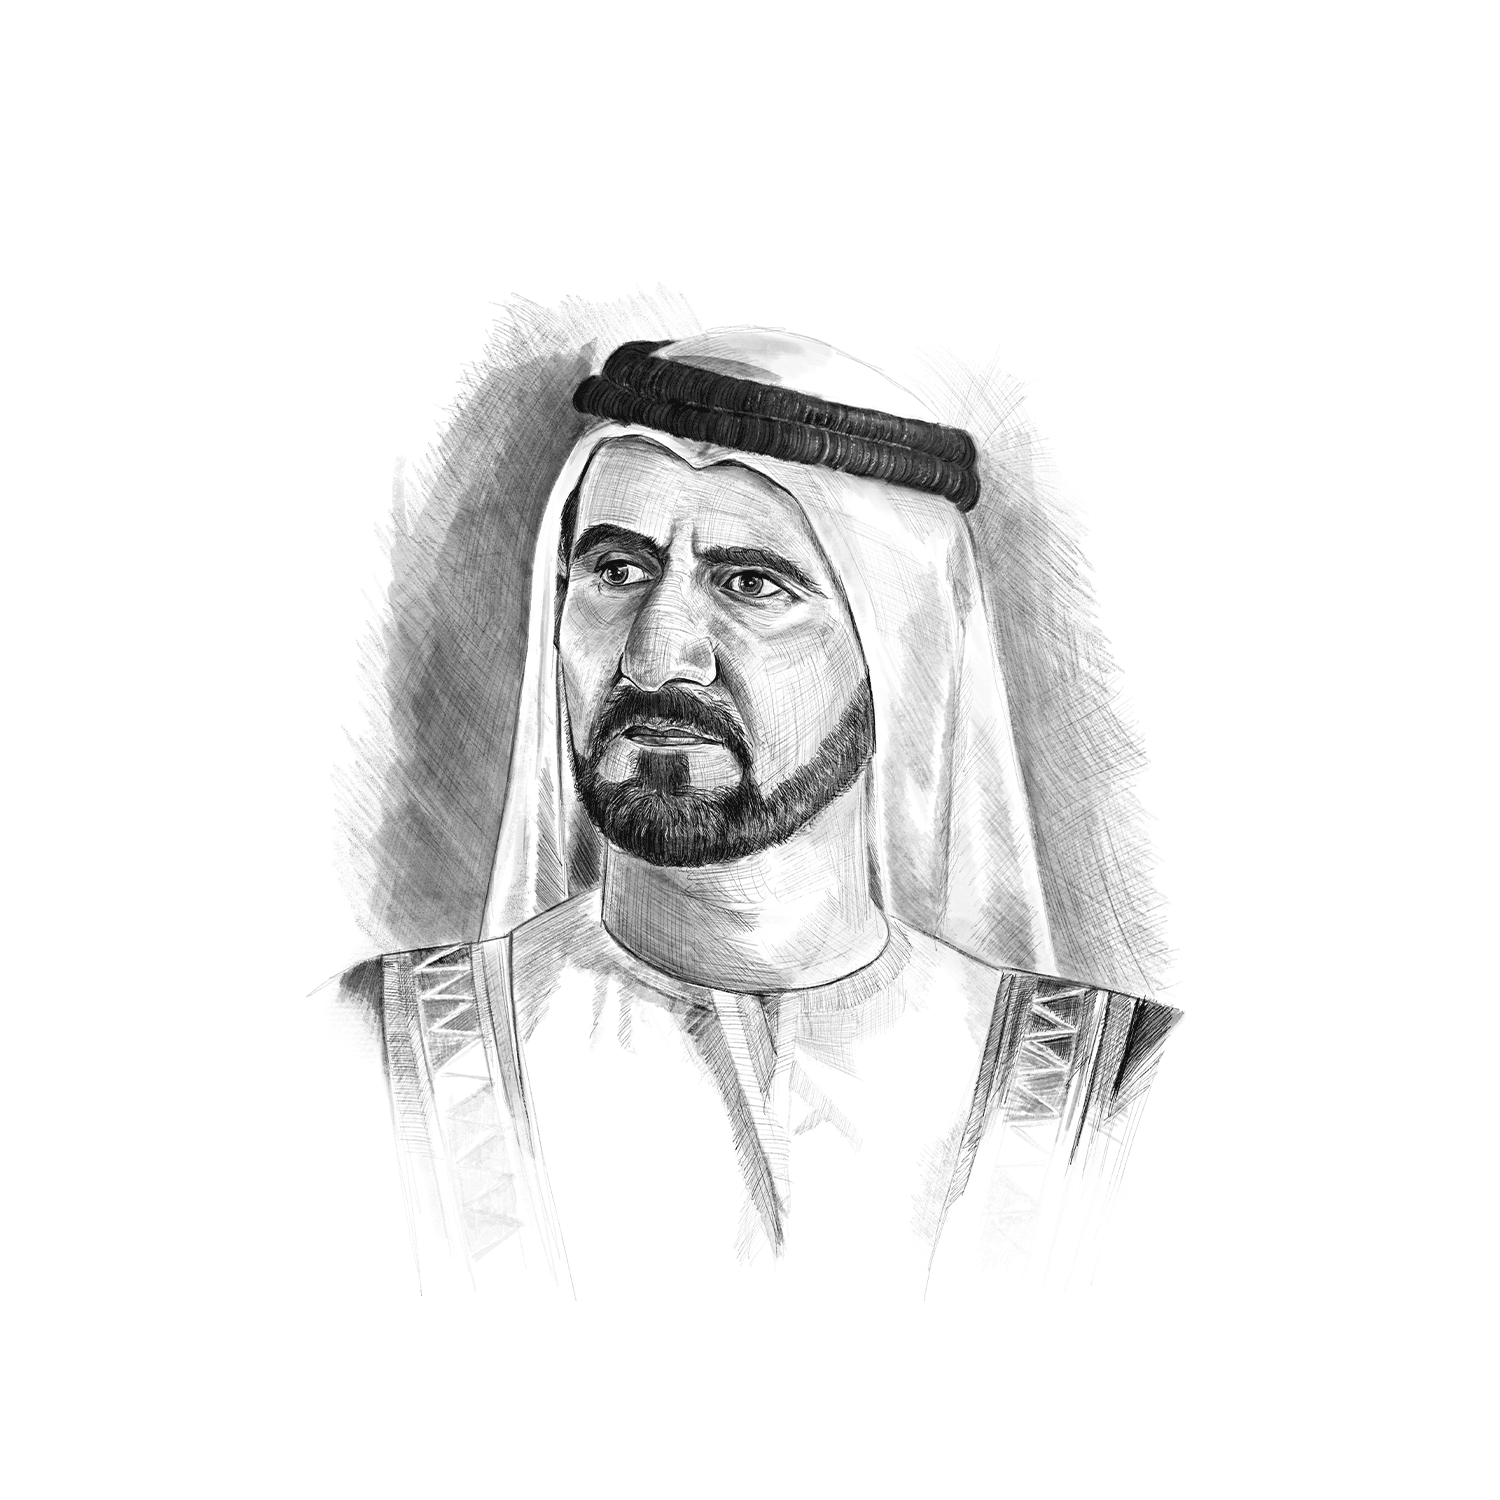 official-portrait-of-his-highness-sheikh-mohammed-bin-rashid-al-maktoum